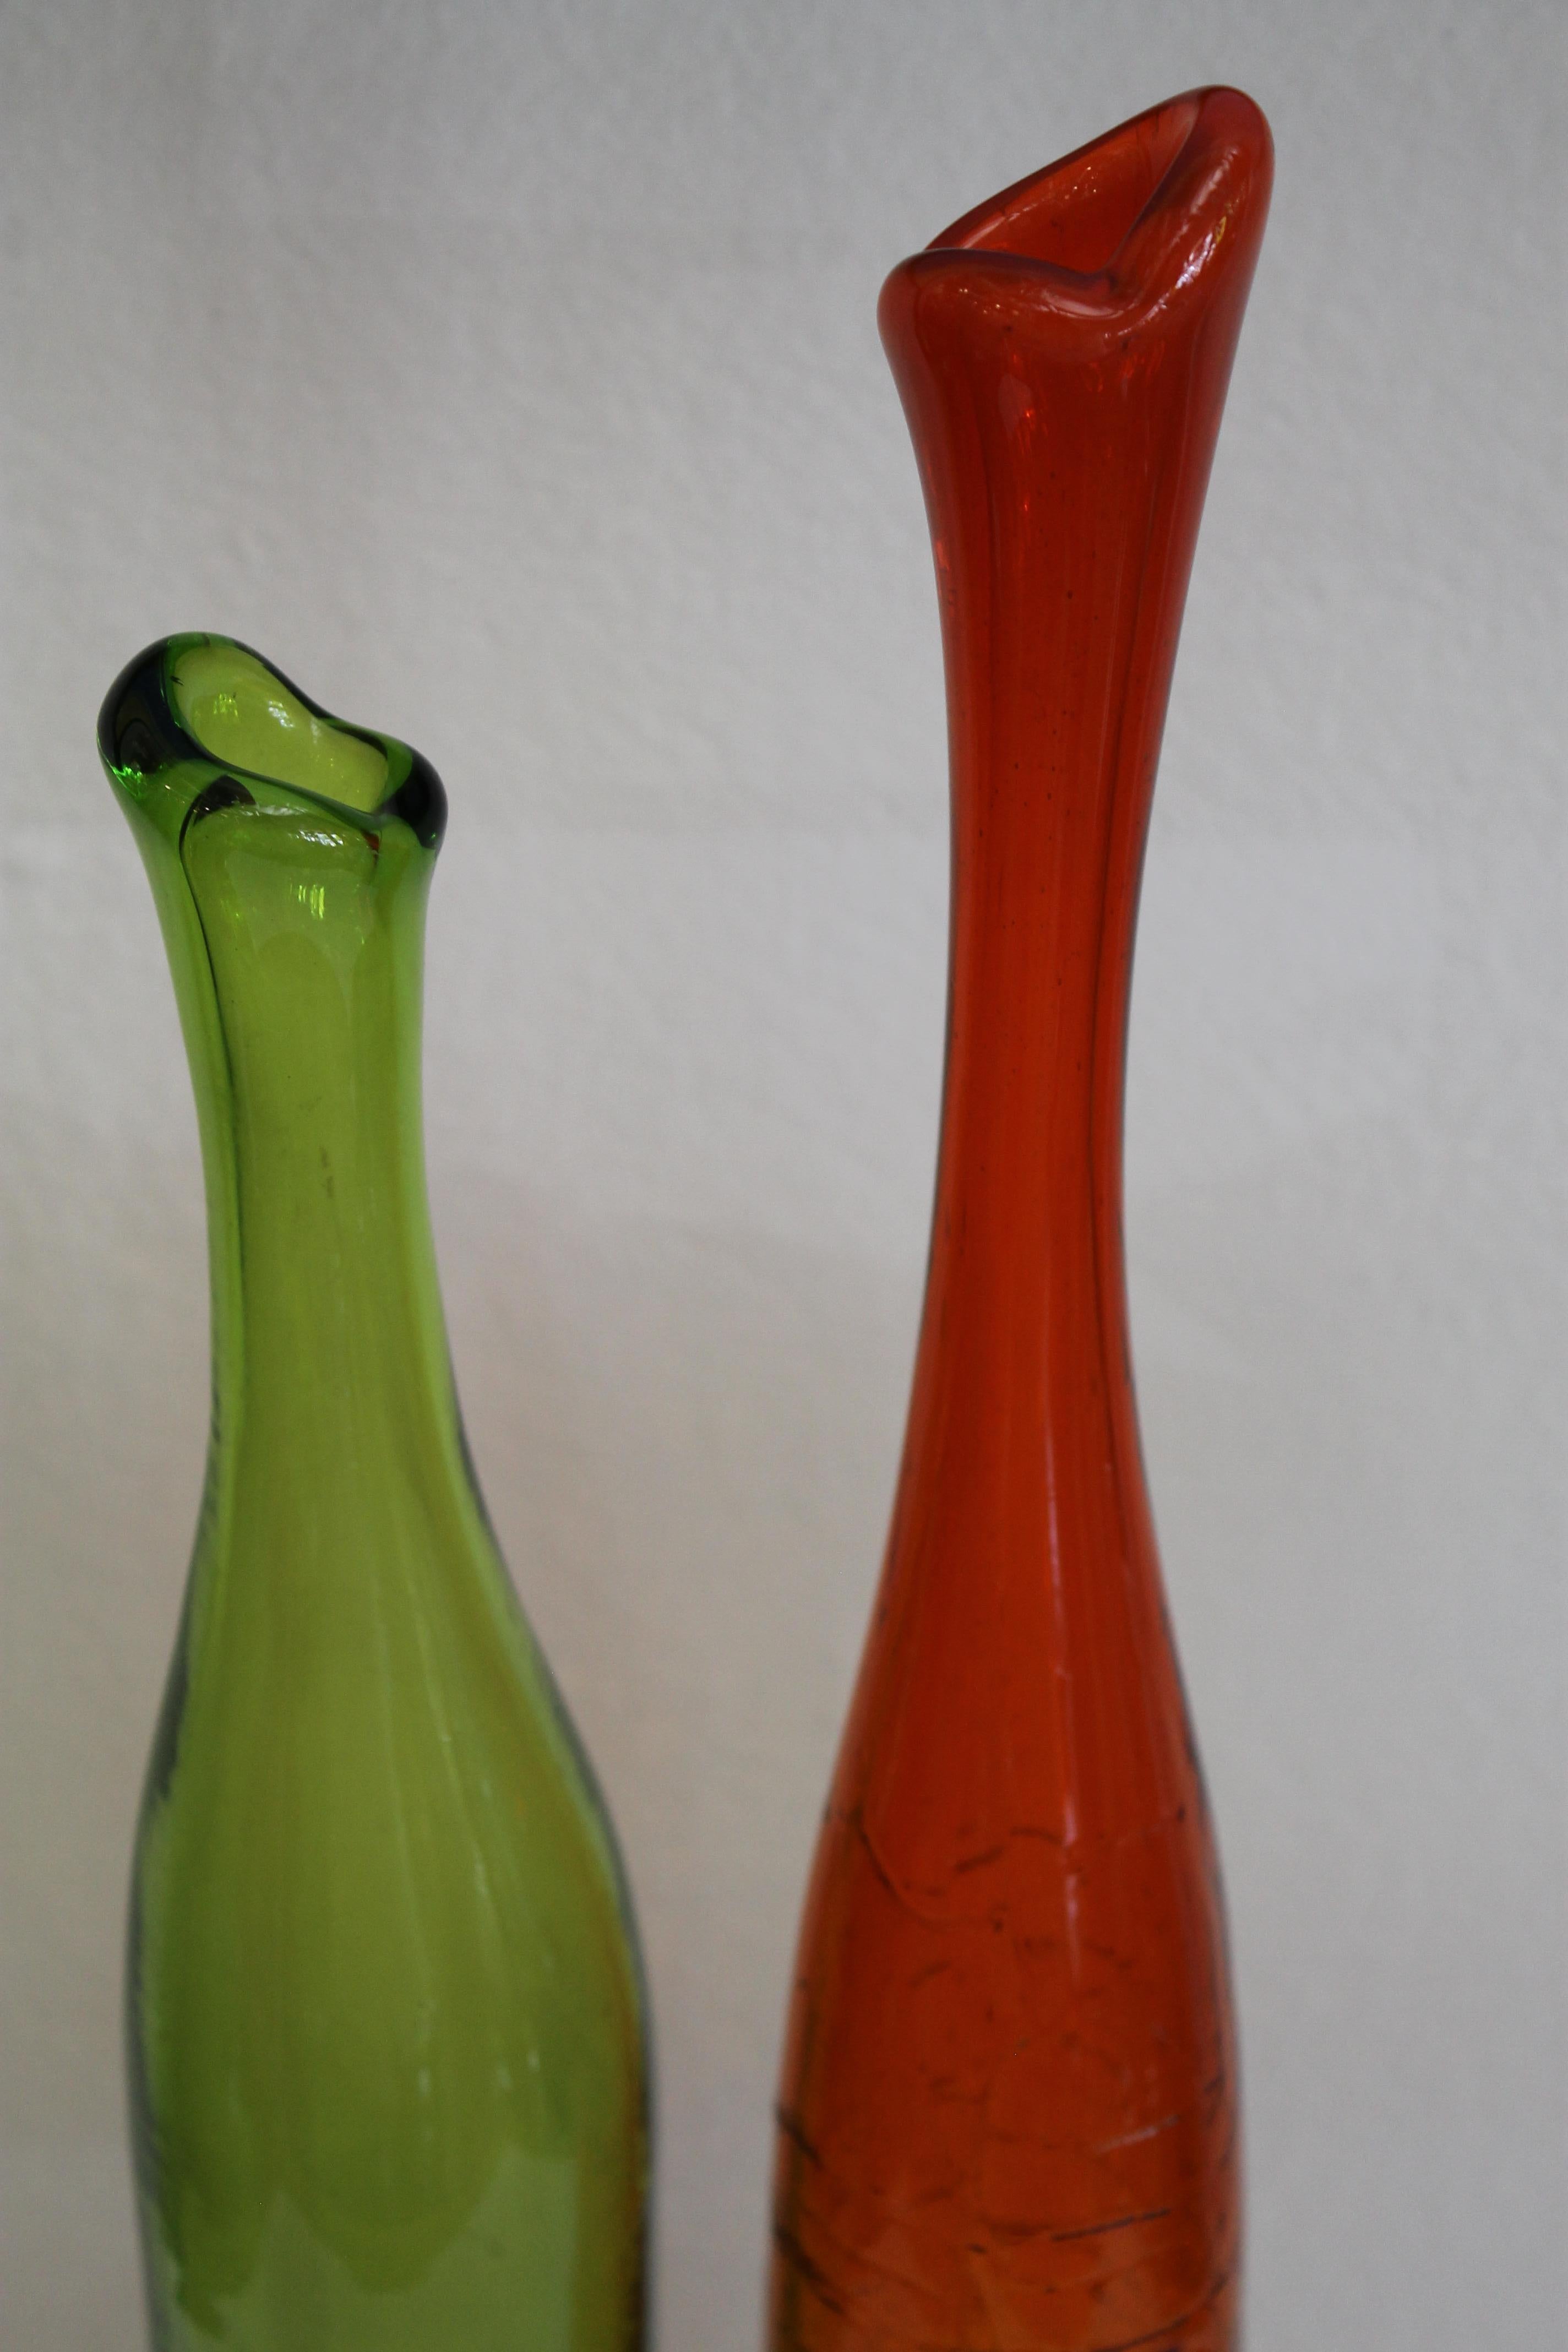 Paar Vasen aus farbigem Glas von Joel Myers, Modell-Nr. 6427, 1960s. Hergestellt von Blenko. Die größte Vase ist 24,25